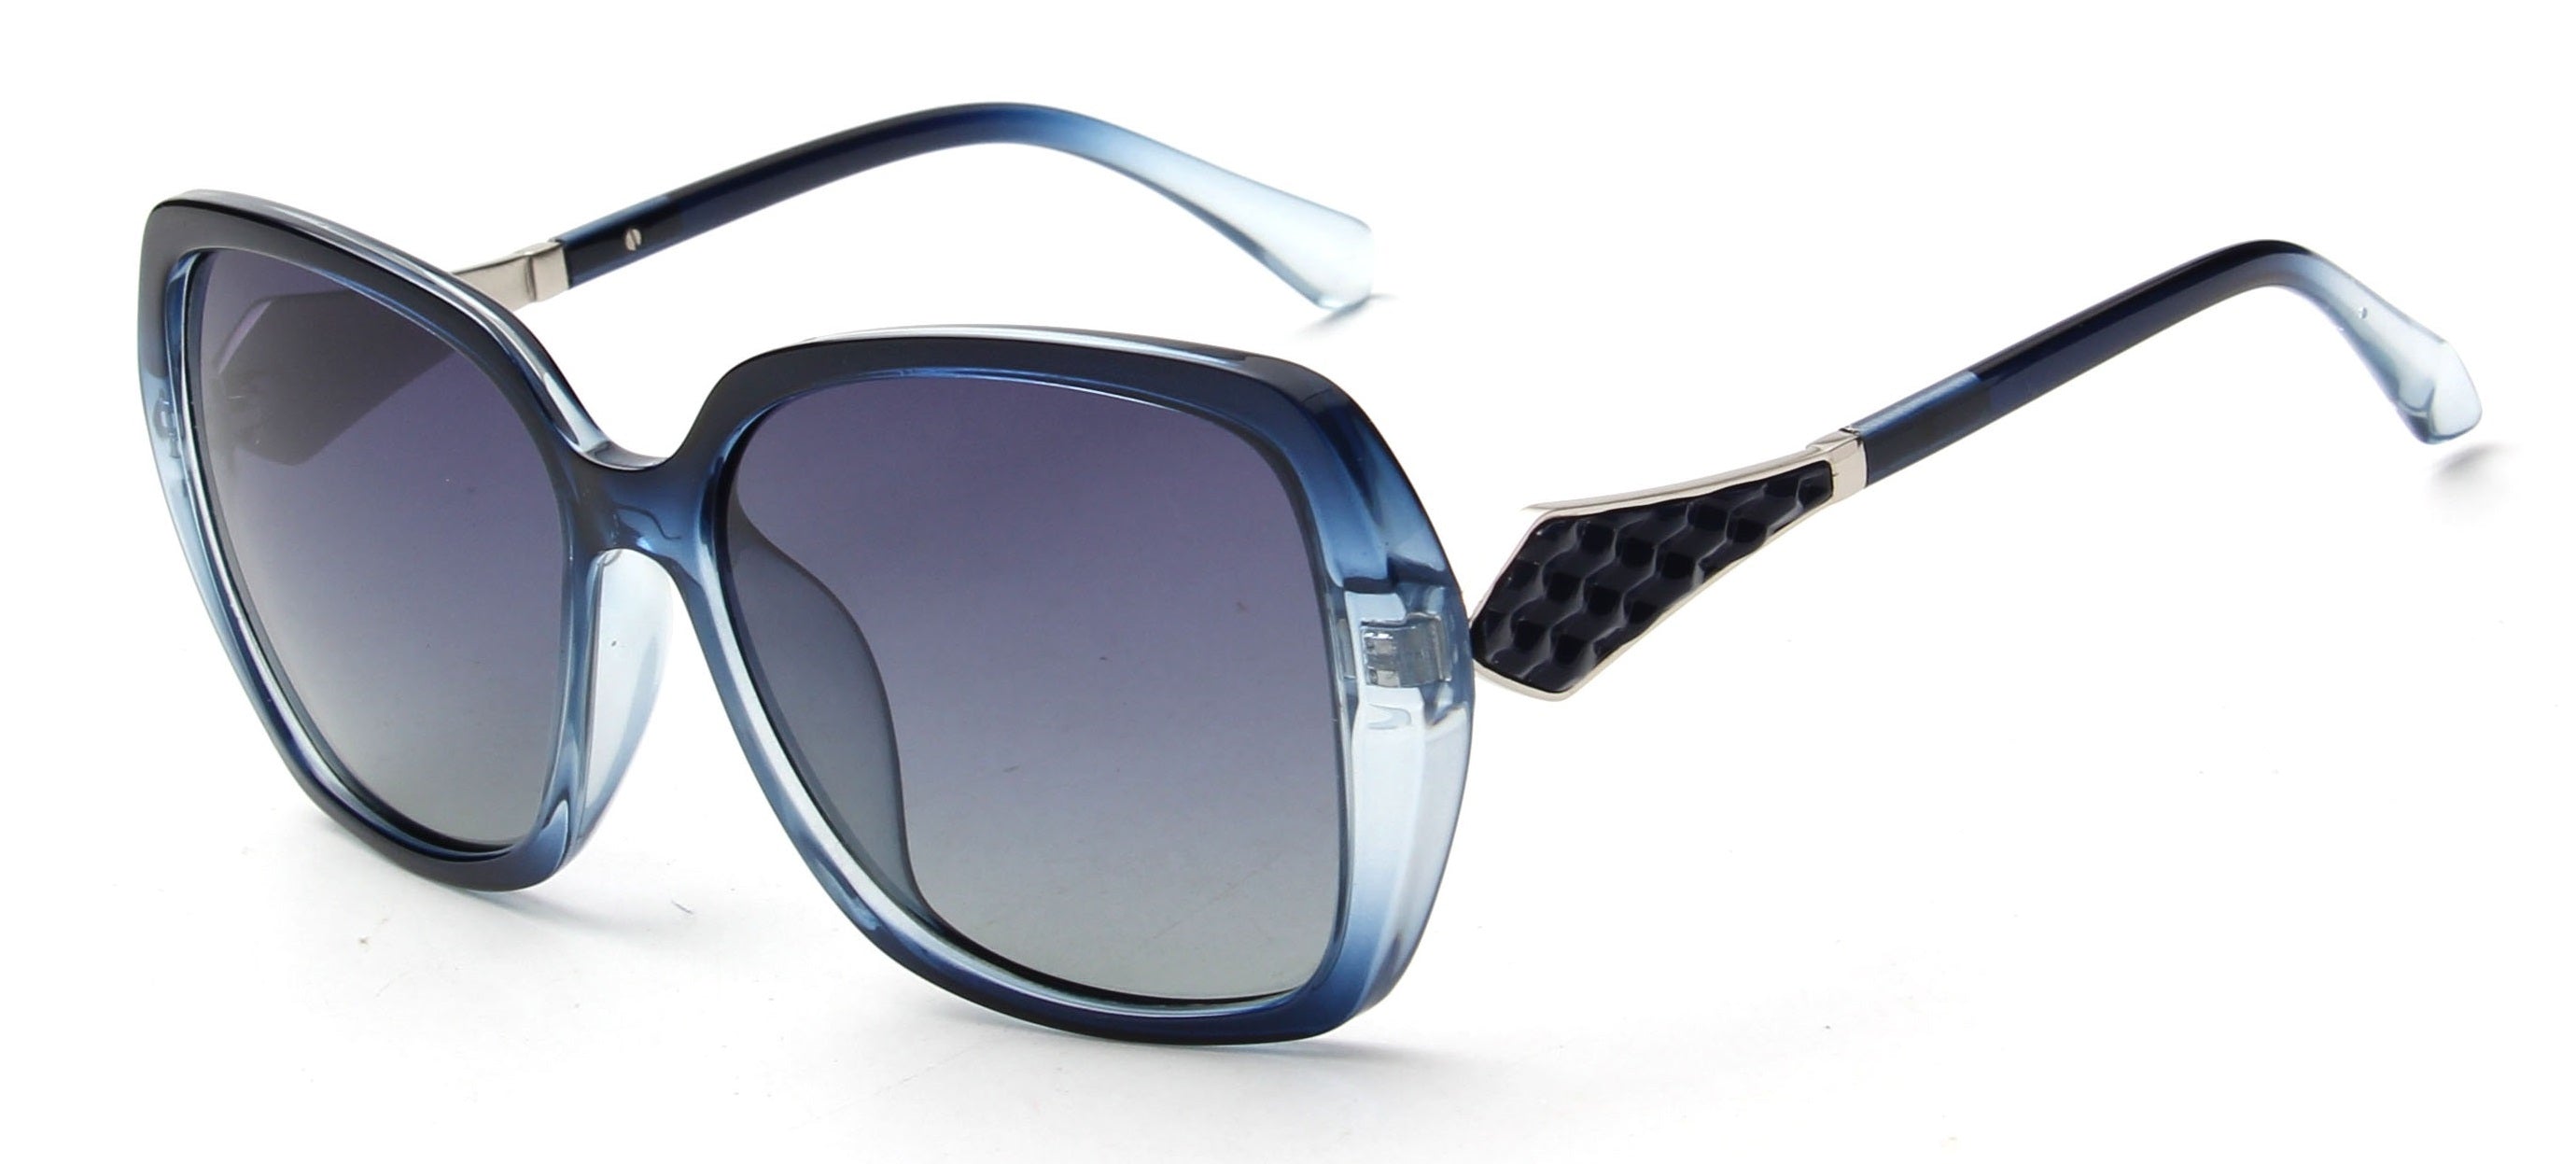 LAT-T30050 - Women Square Oversize Polarized Sunglasses Blue